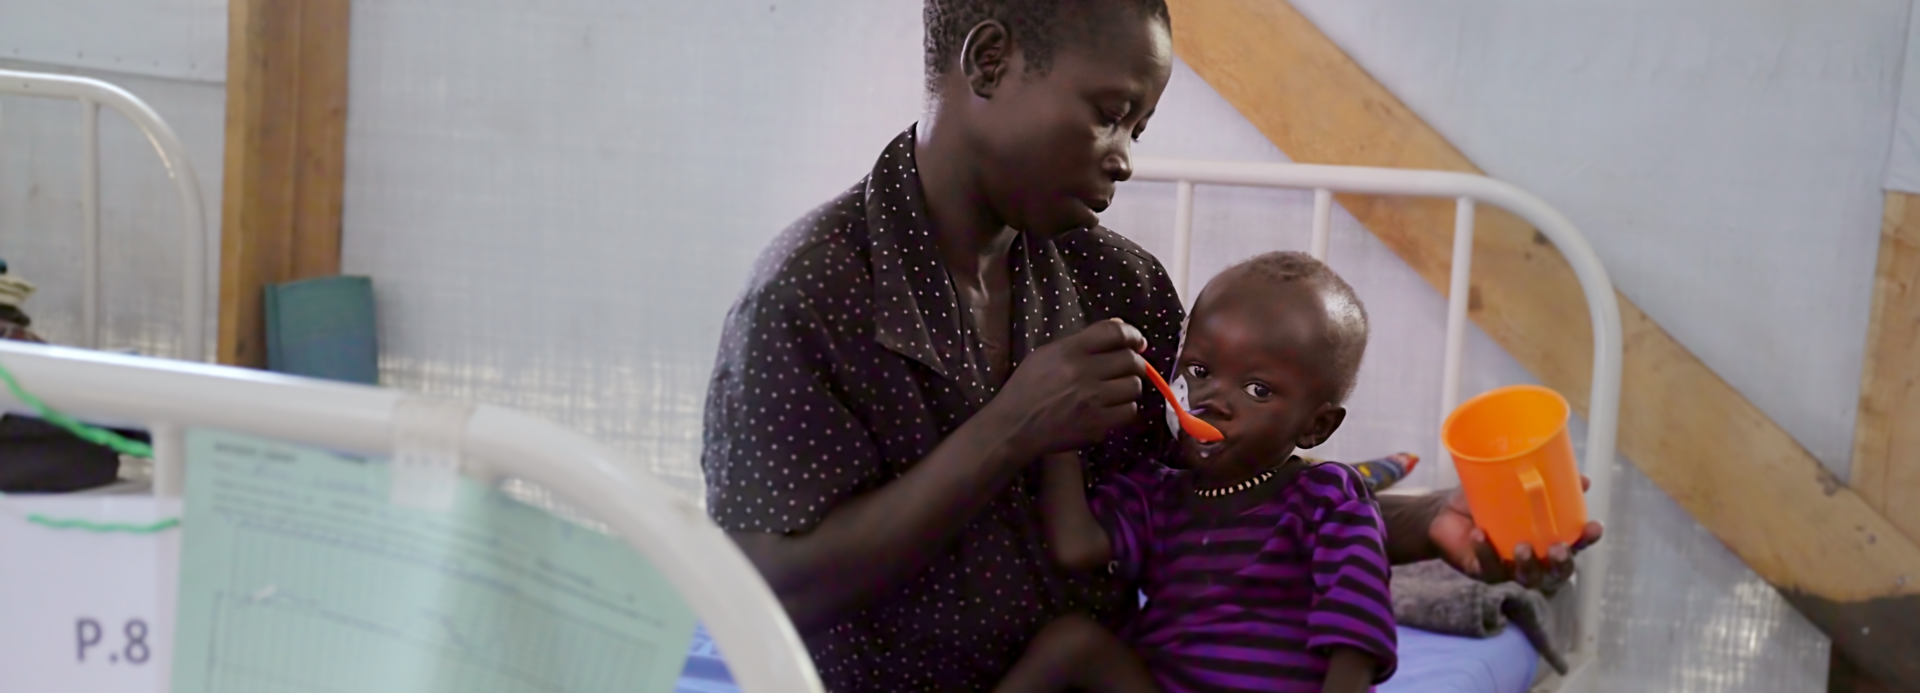 Mutter füttert mangelernährtes Kind in einer Gesundheitsstation von Aktion gegen den Hunger.